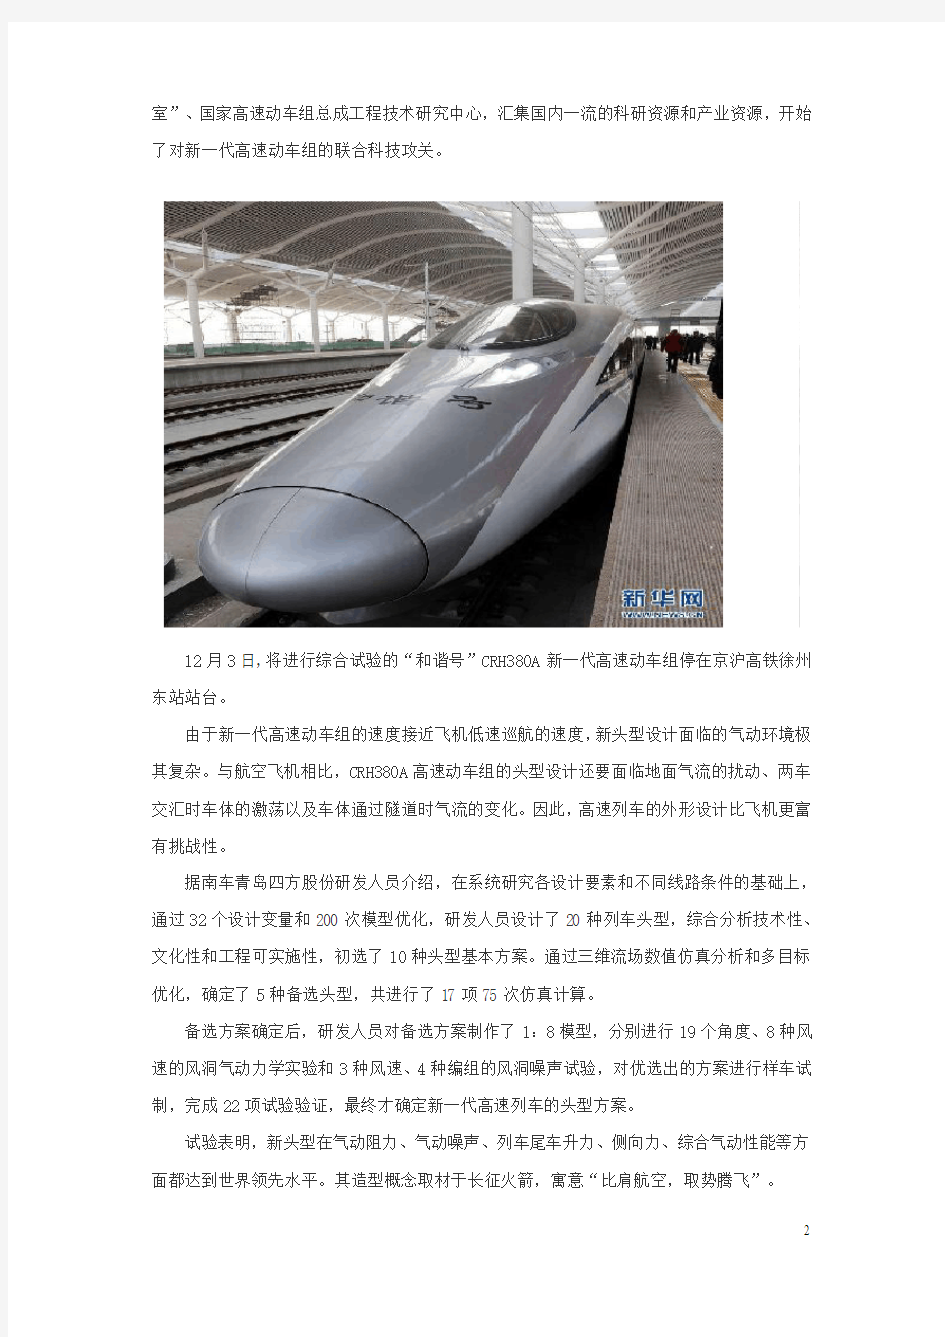 酷似“火箭”列车的京沪高铁票价表